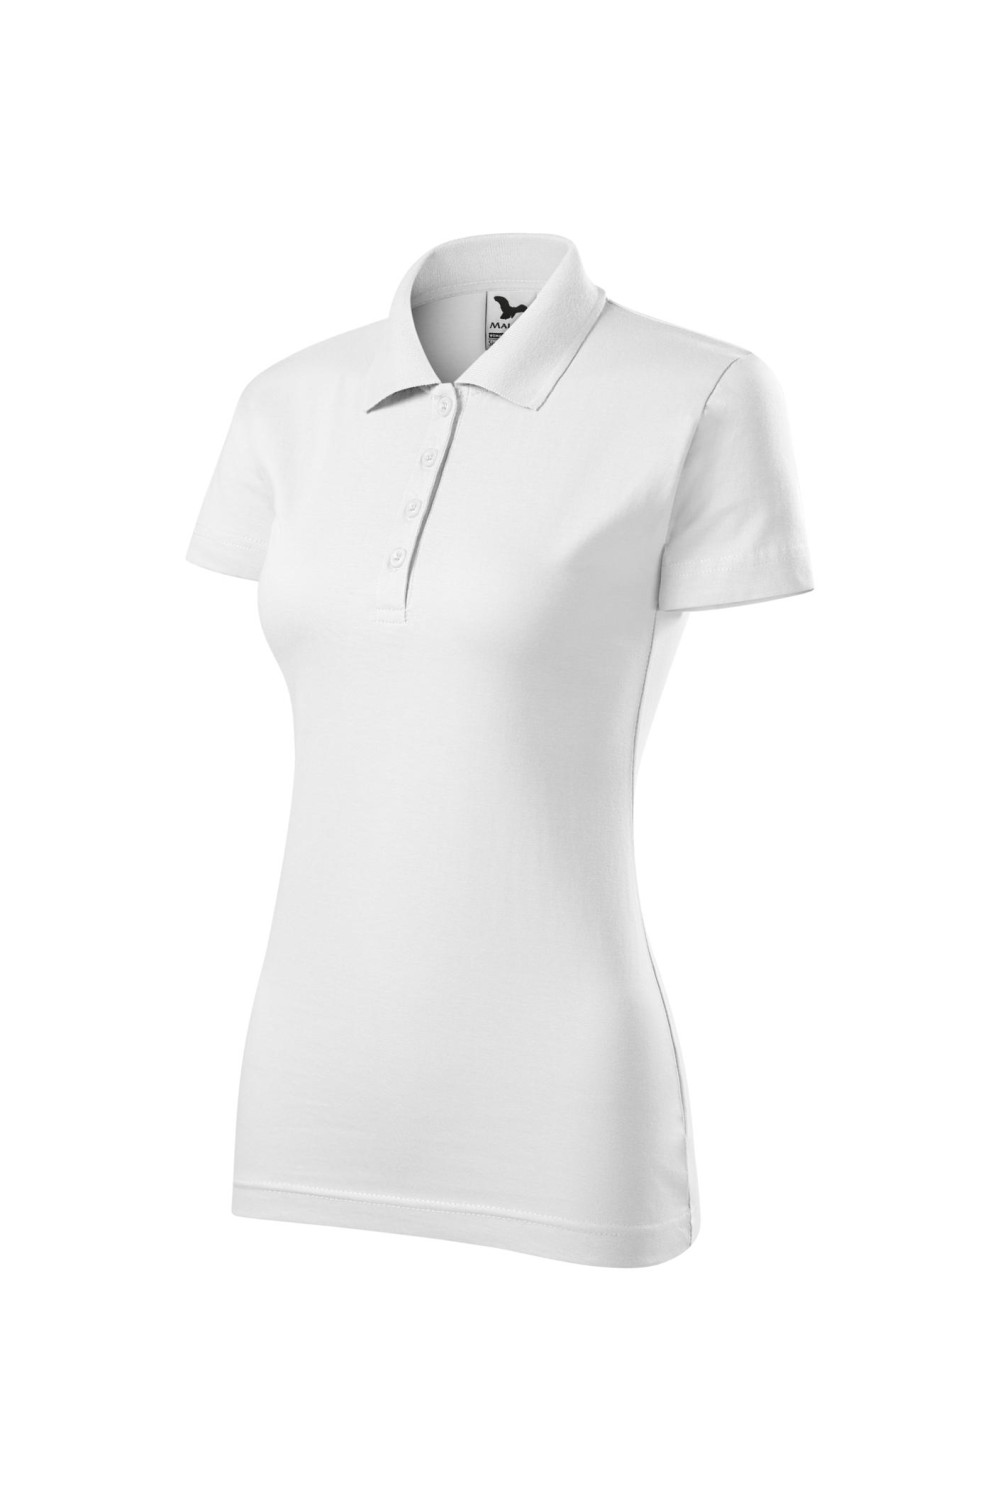 SINGLE J. 223 MALFINI ADLER Koszulka polo damska klasyczna 100% bawełna biały